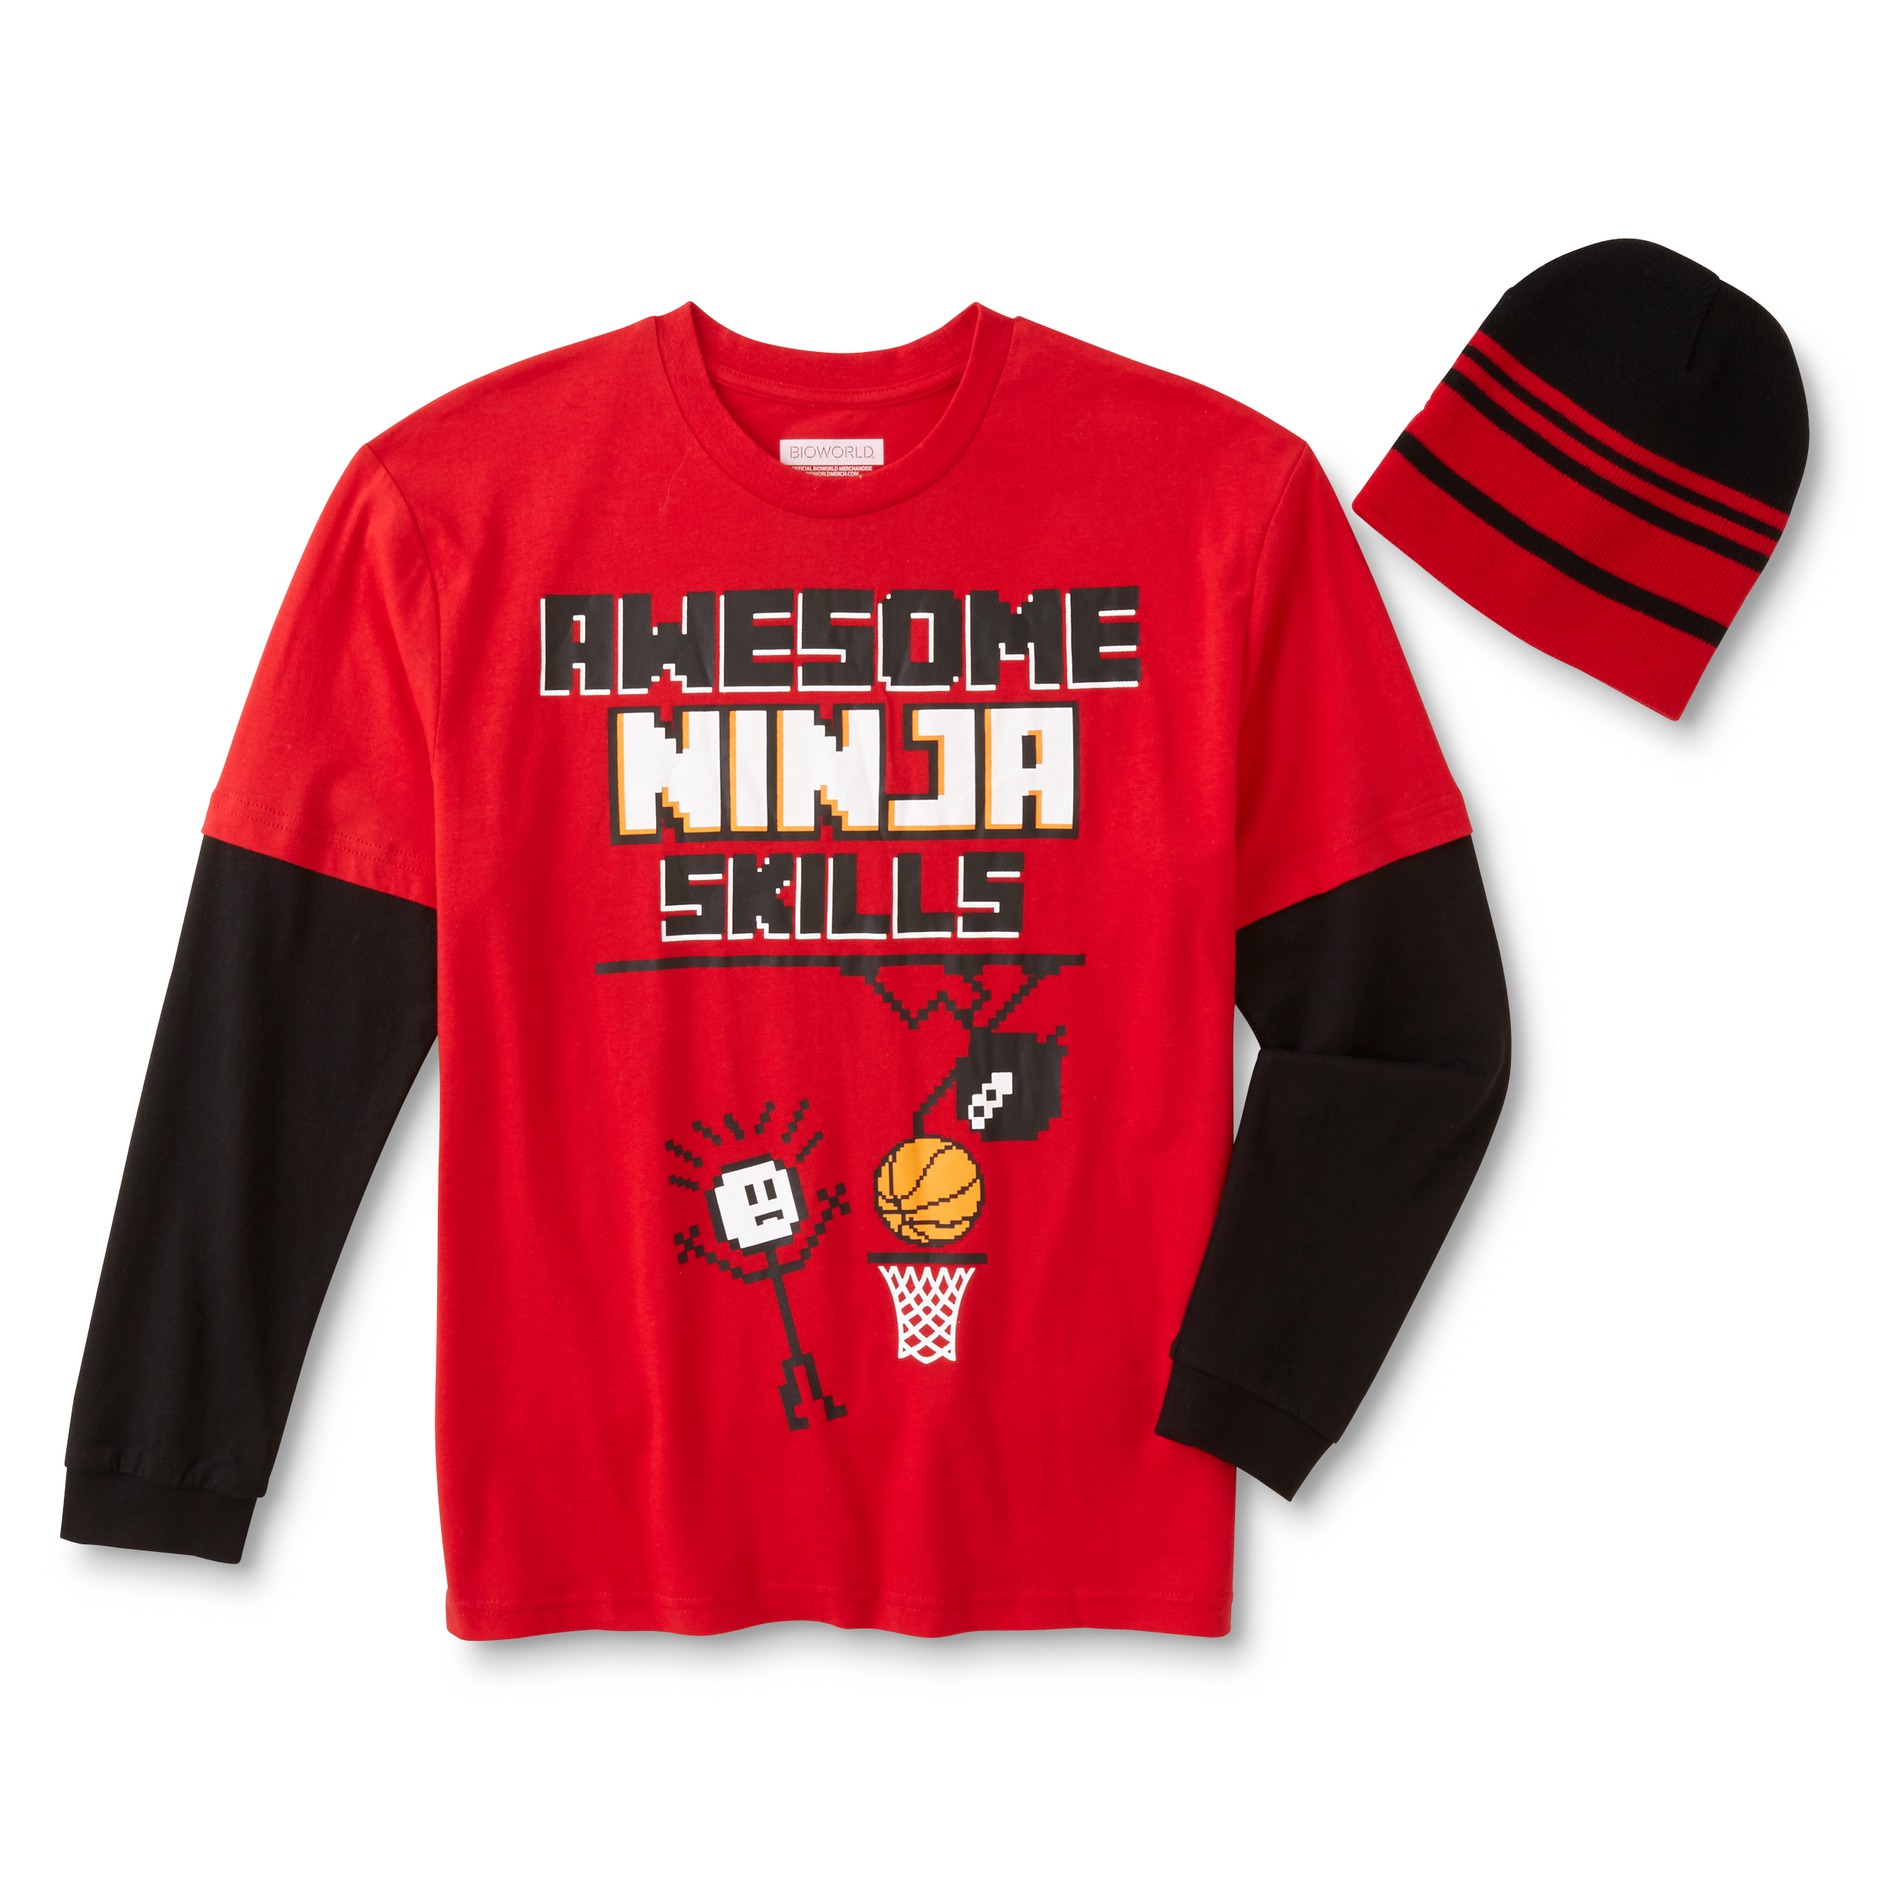 Boys' Graphic T-Shirt & Beanie - Ninja Skills